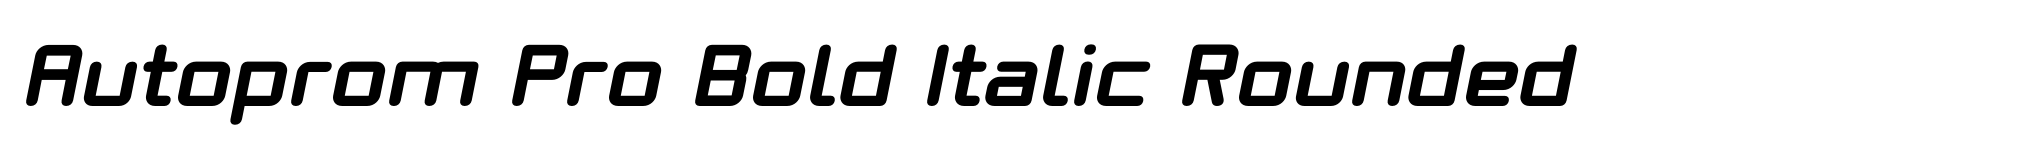 Autoprom Pro Bold Italic Rounded image